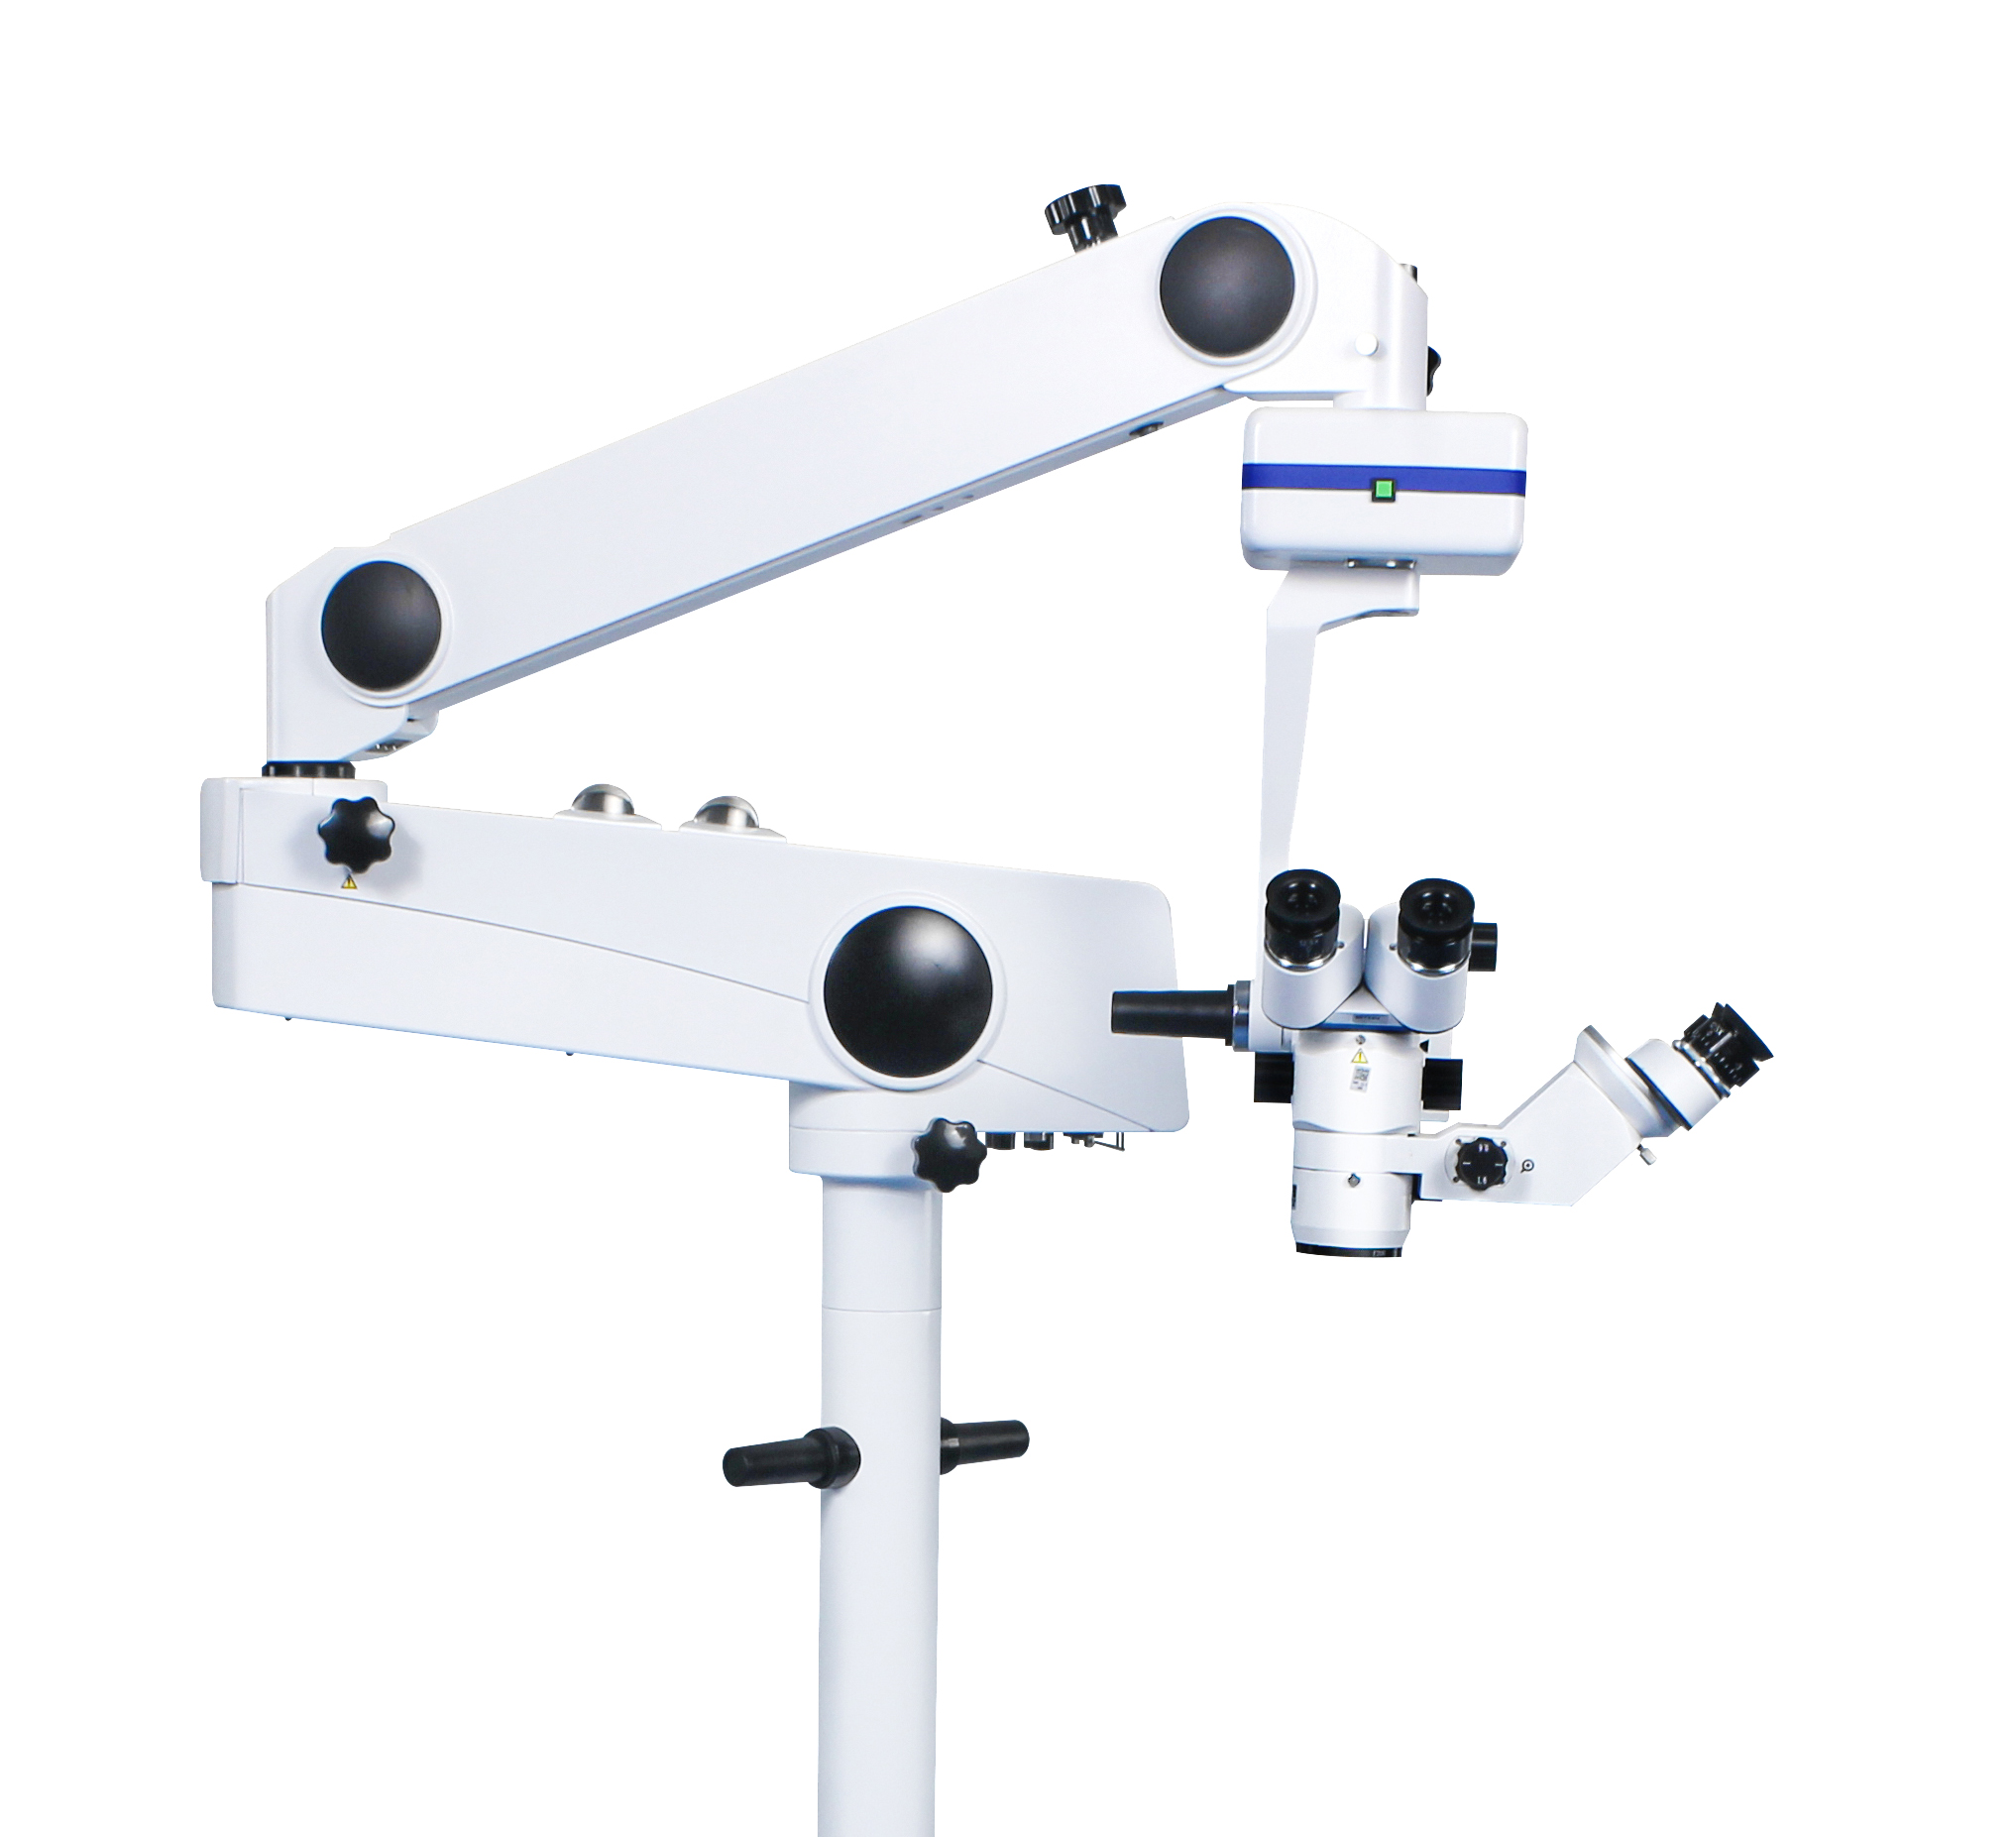 Pokroky v chirurgických mikroskopech: Zvýšení přesnosti a zrakové jasnosti v lékařských postupech